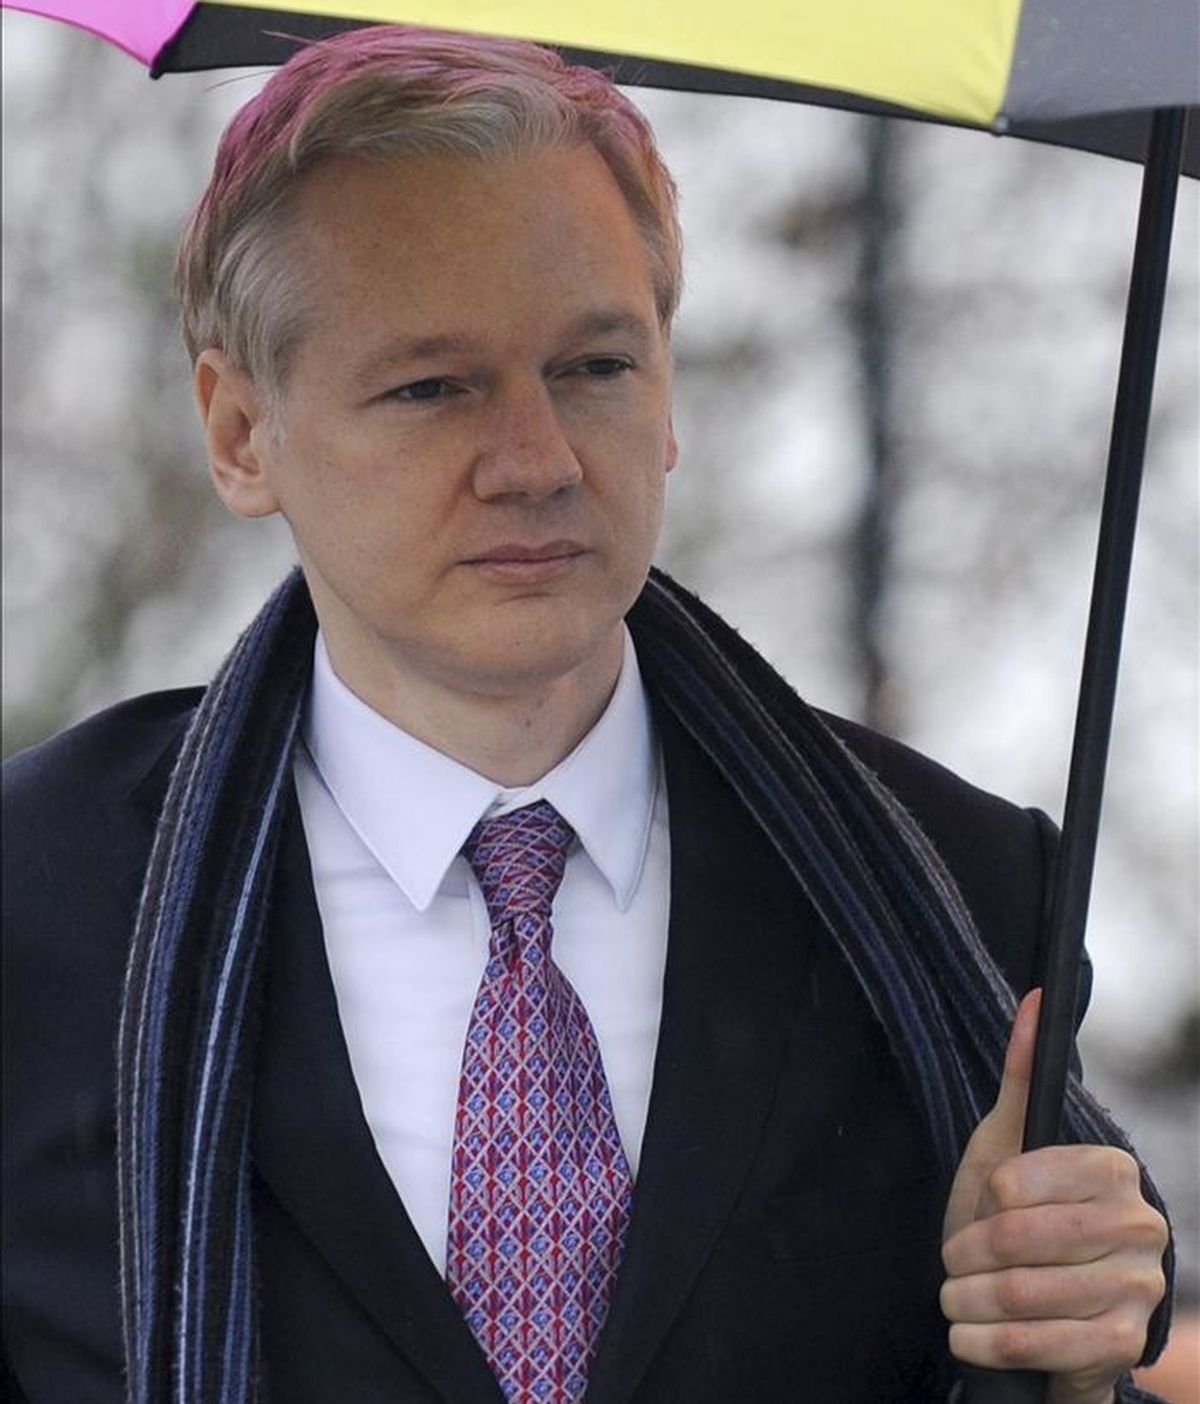 El fundador de Wikileaks, Julian Assange, llega al Belmarsh Magistrates Court para la tercera jornada de la vista judicial sobre su extradición a Suecia, en Londres, el pasado 11 de febrero. EFE/Archivo